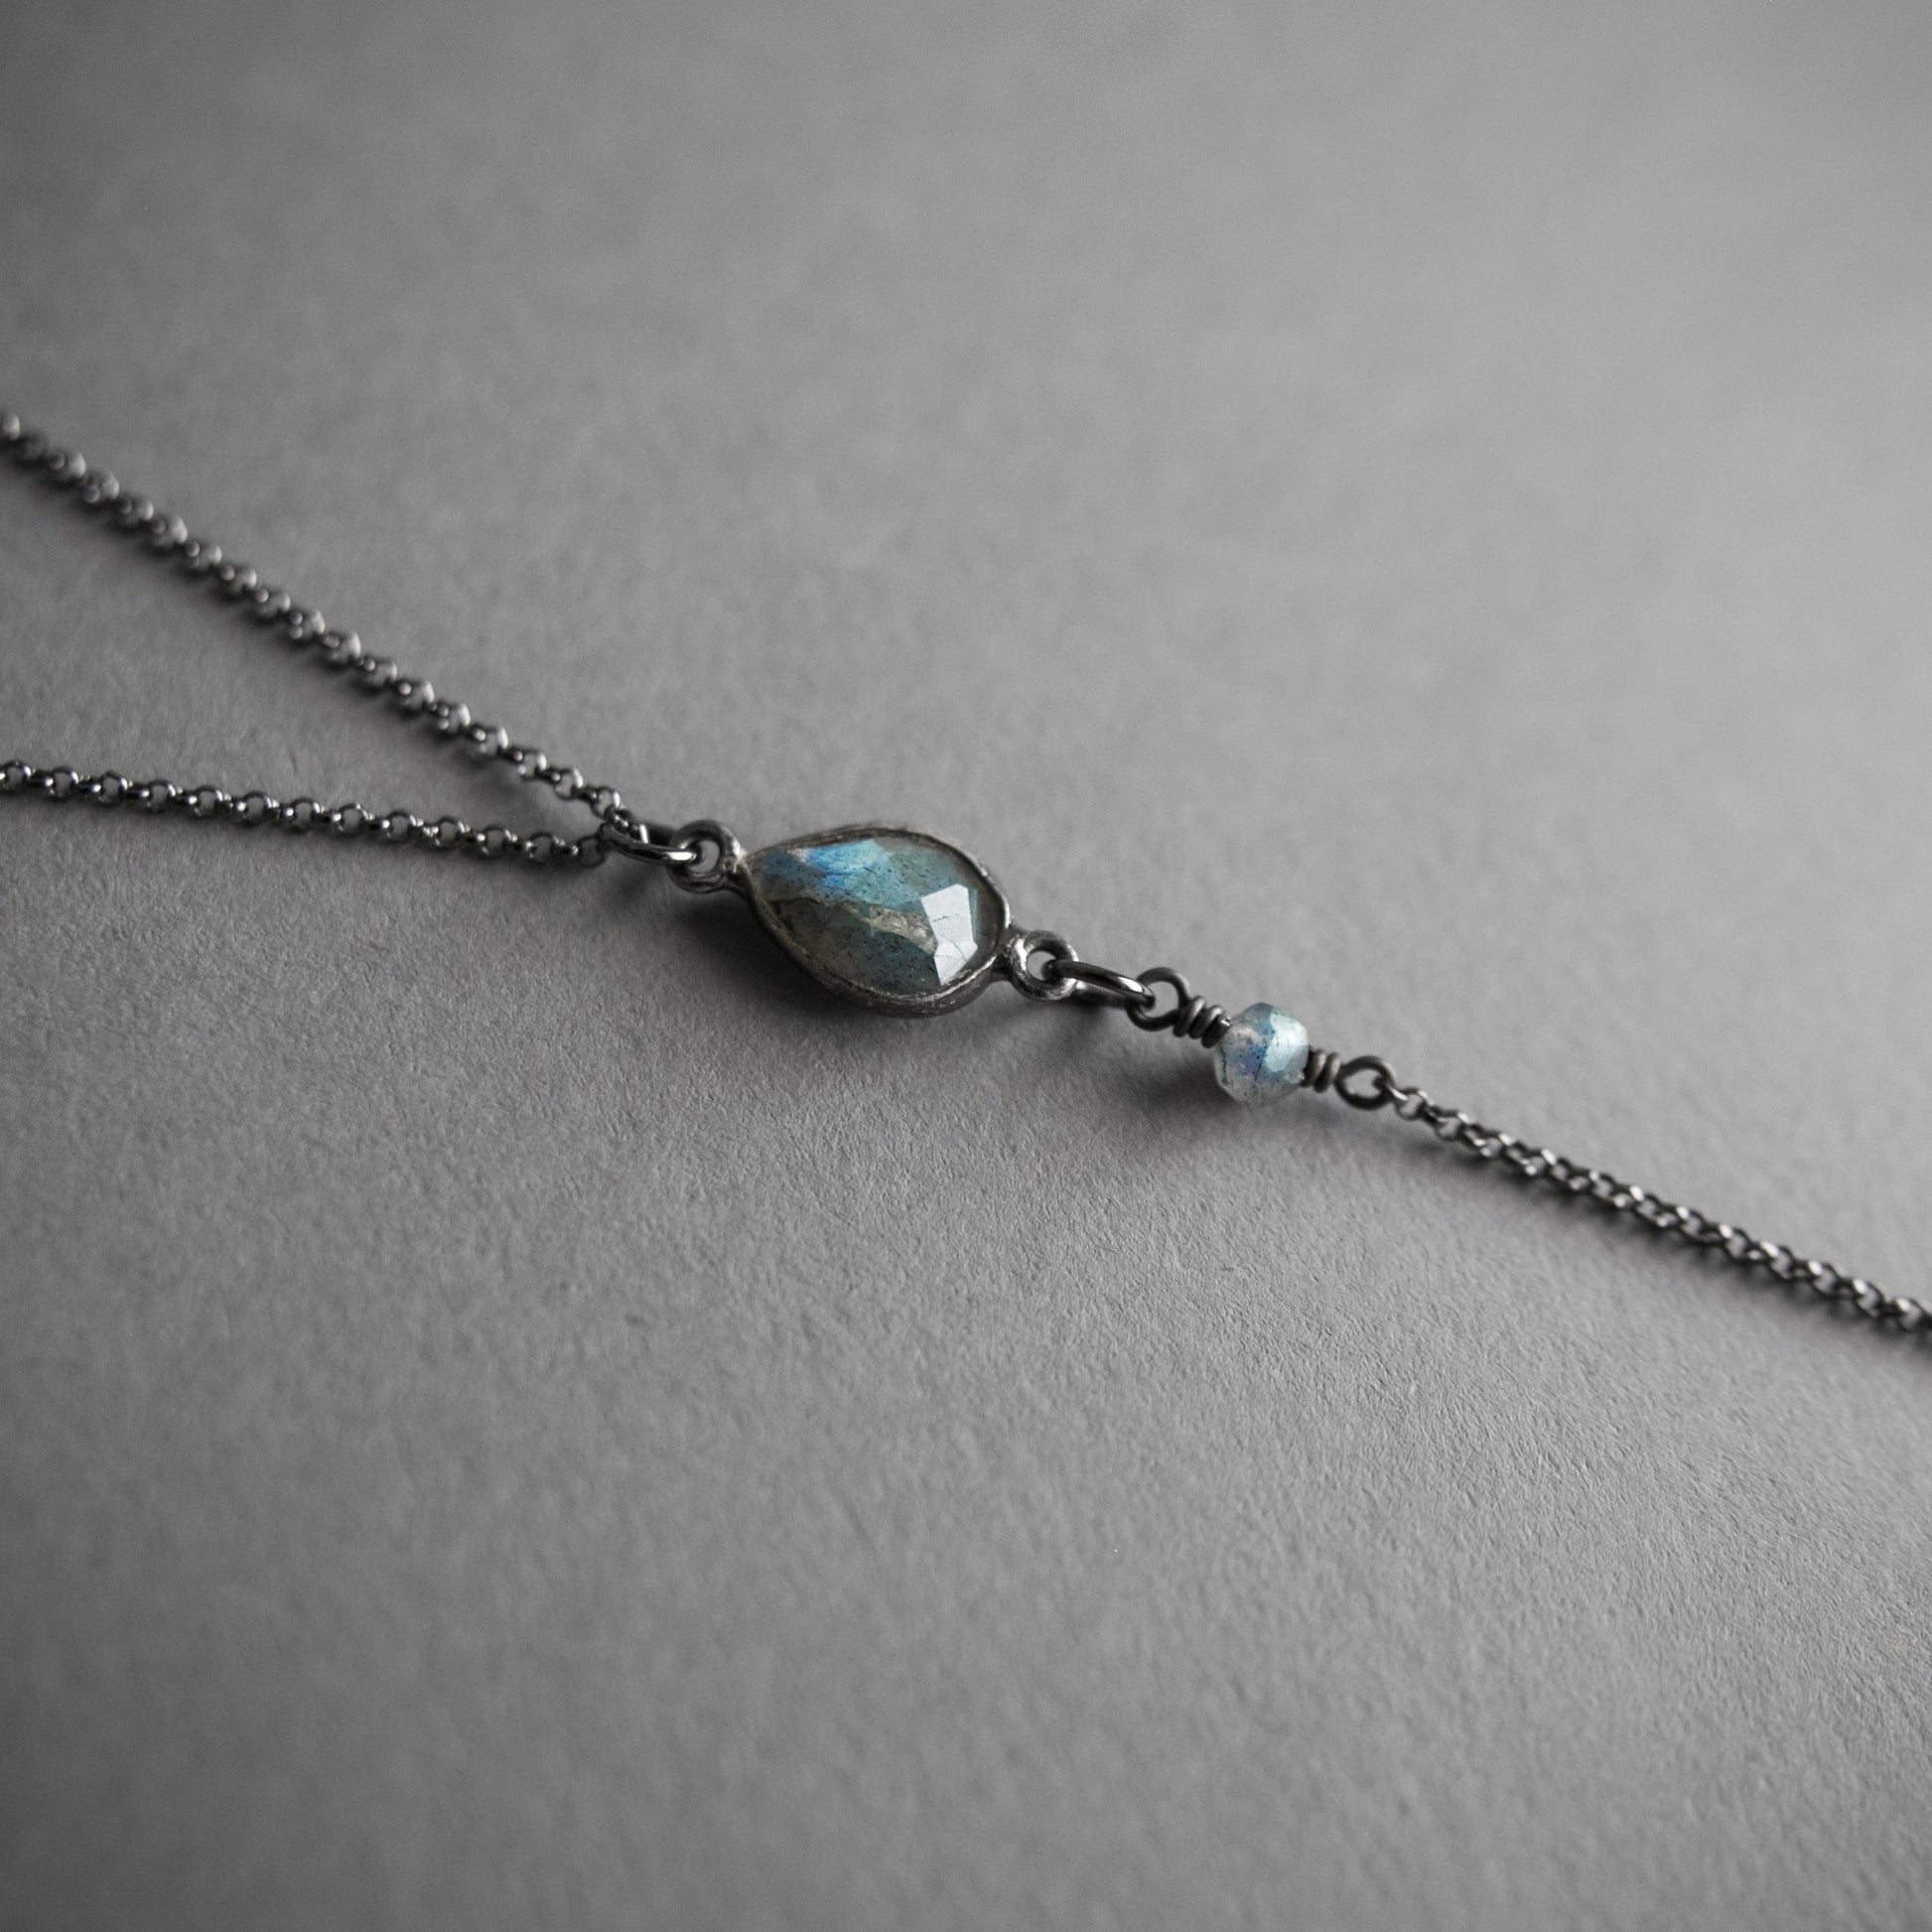 Labradorite lariat y necklace with crystal drop , close up on the labradorite teardrop piece